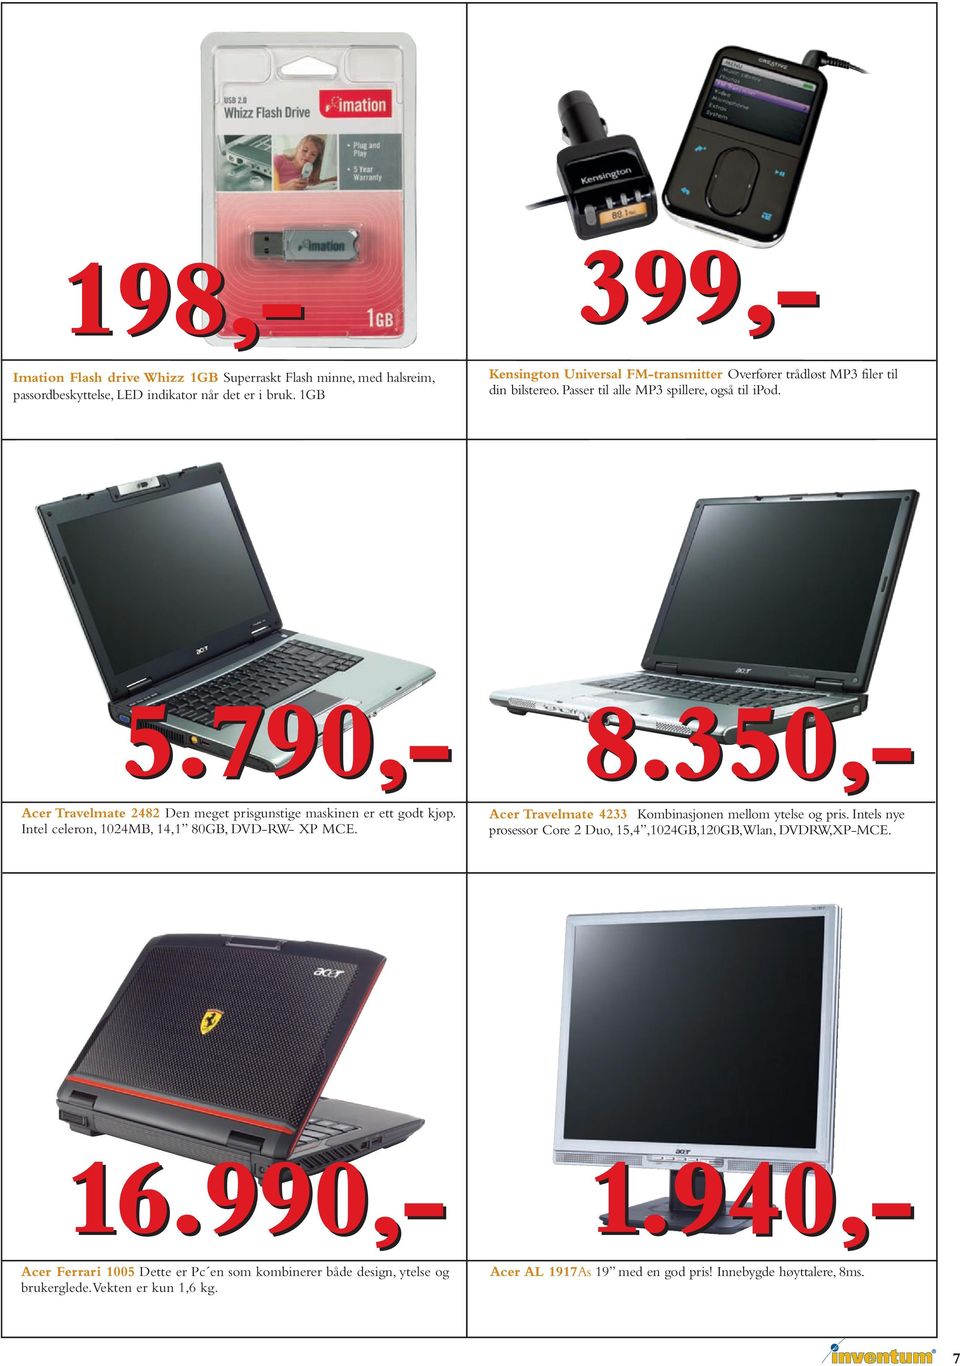 350,- Acer Travelmate 2482 Den meget prisgunstige maskinen er ett godt kjøp. Intel celeron, 1024MB, 14,1 80GB, DVD-RW- XP MCE.